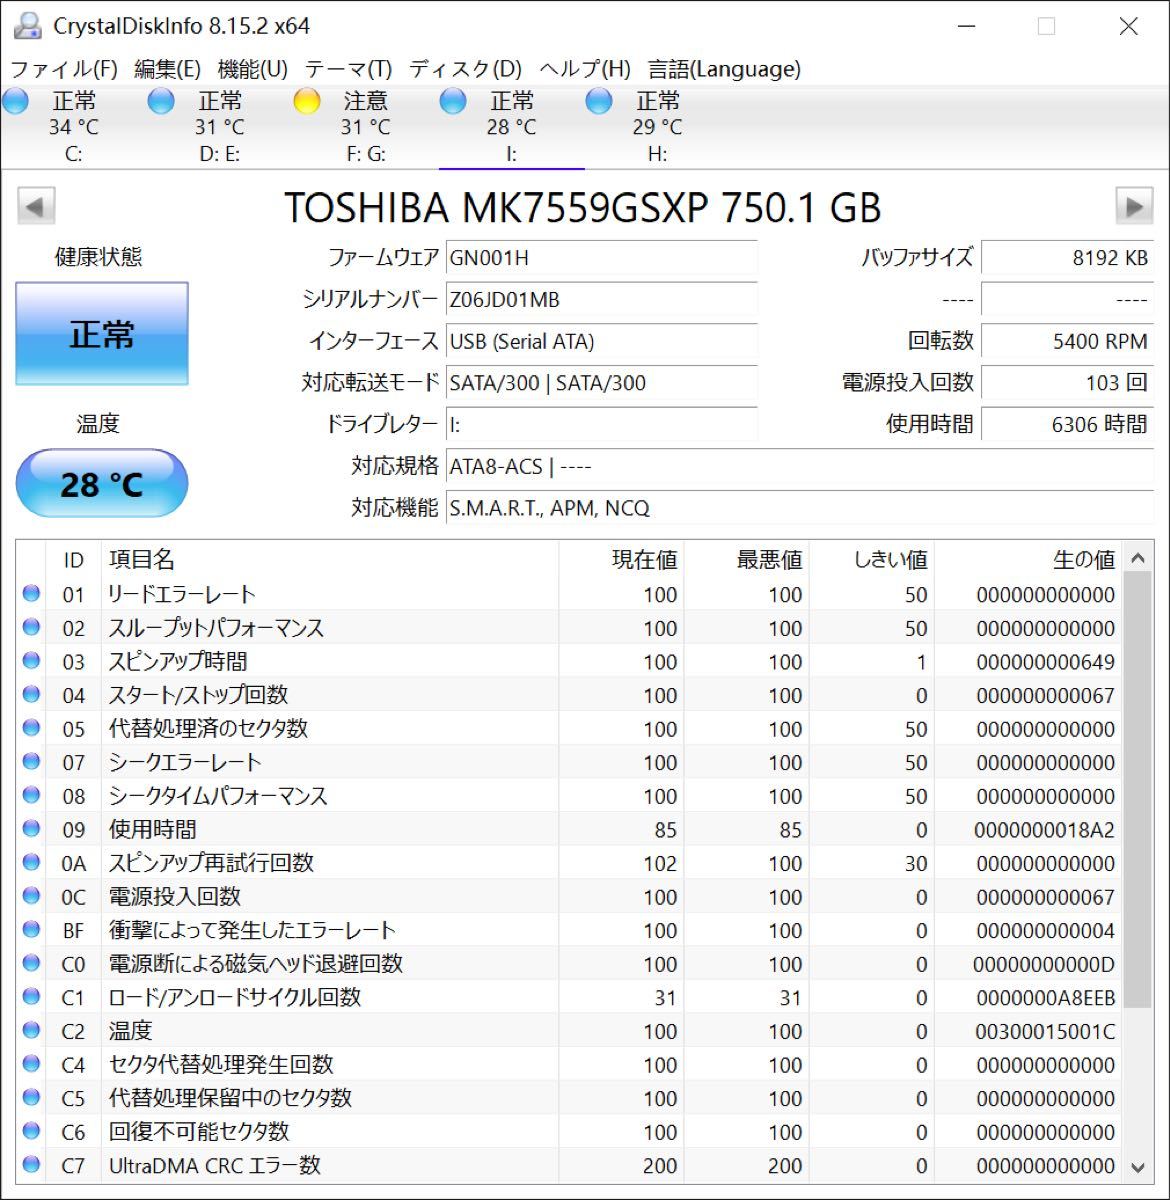 使用時間6306H TOSHIBA MK7559GSXP 750GB HDD 2.5インチ SATA 正常判定　A0099